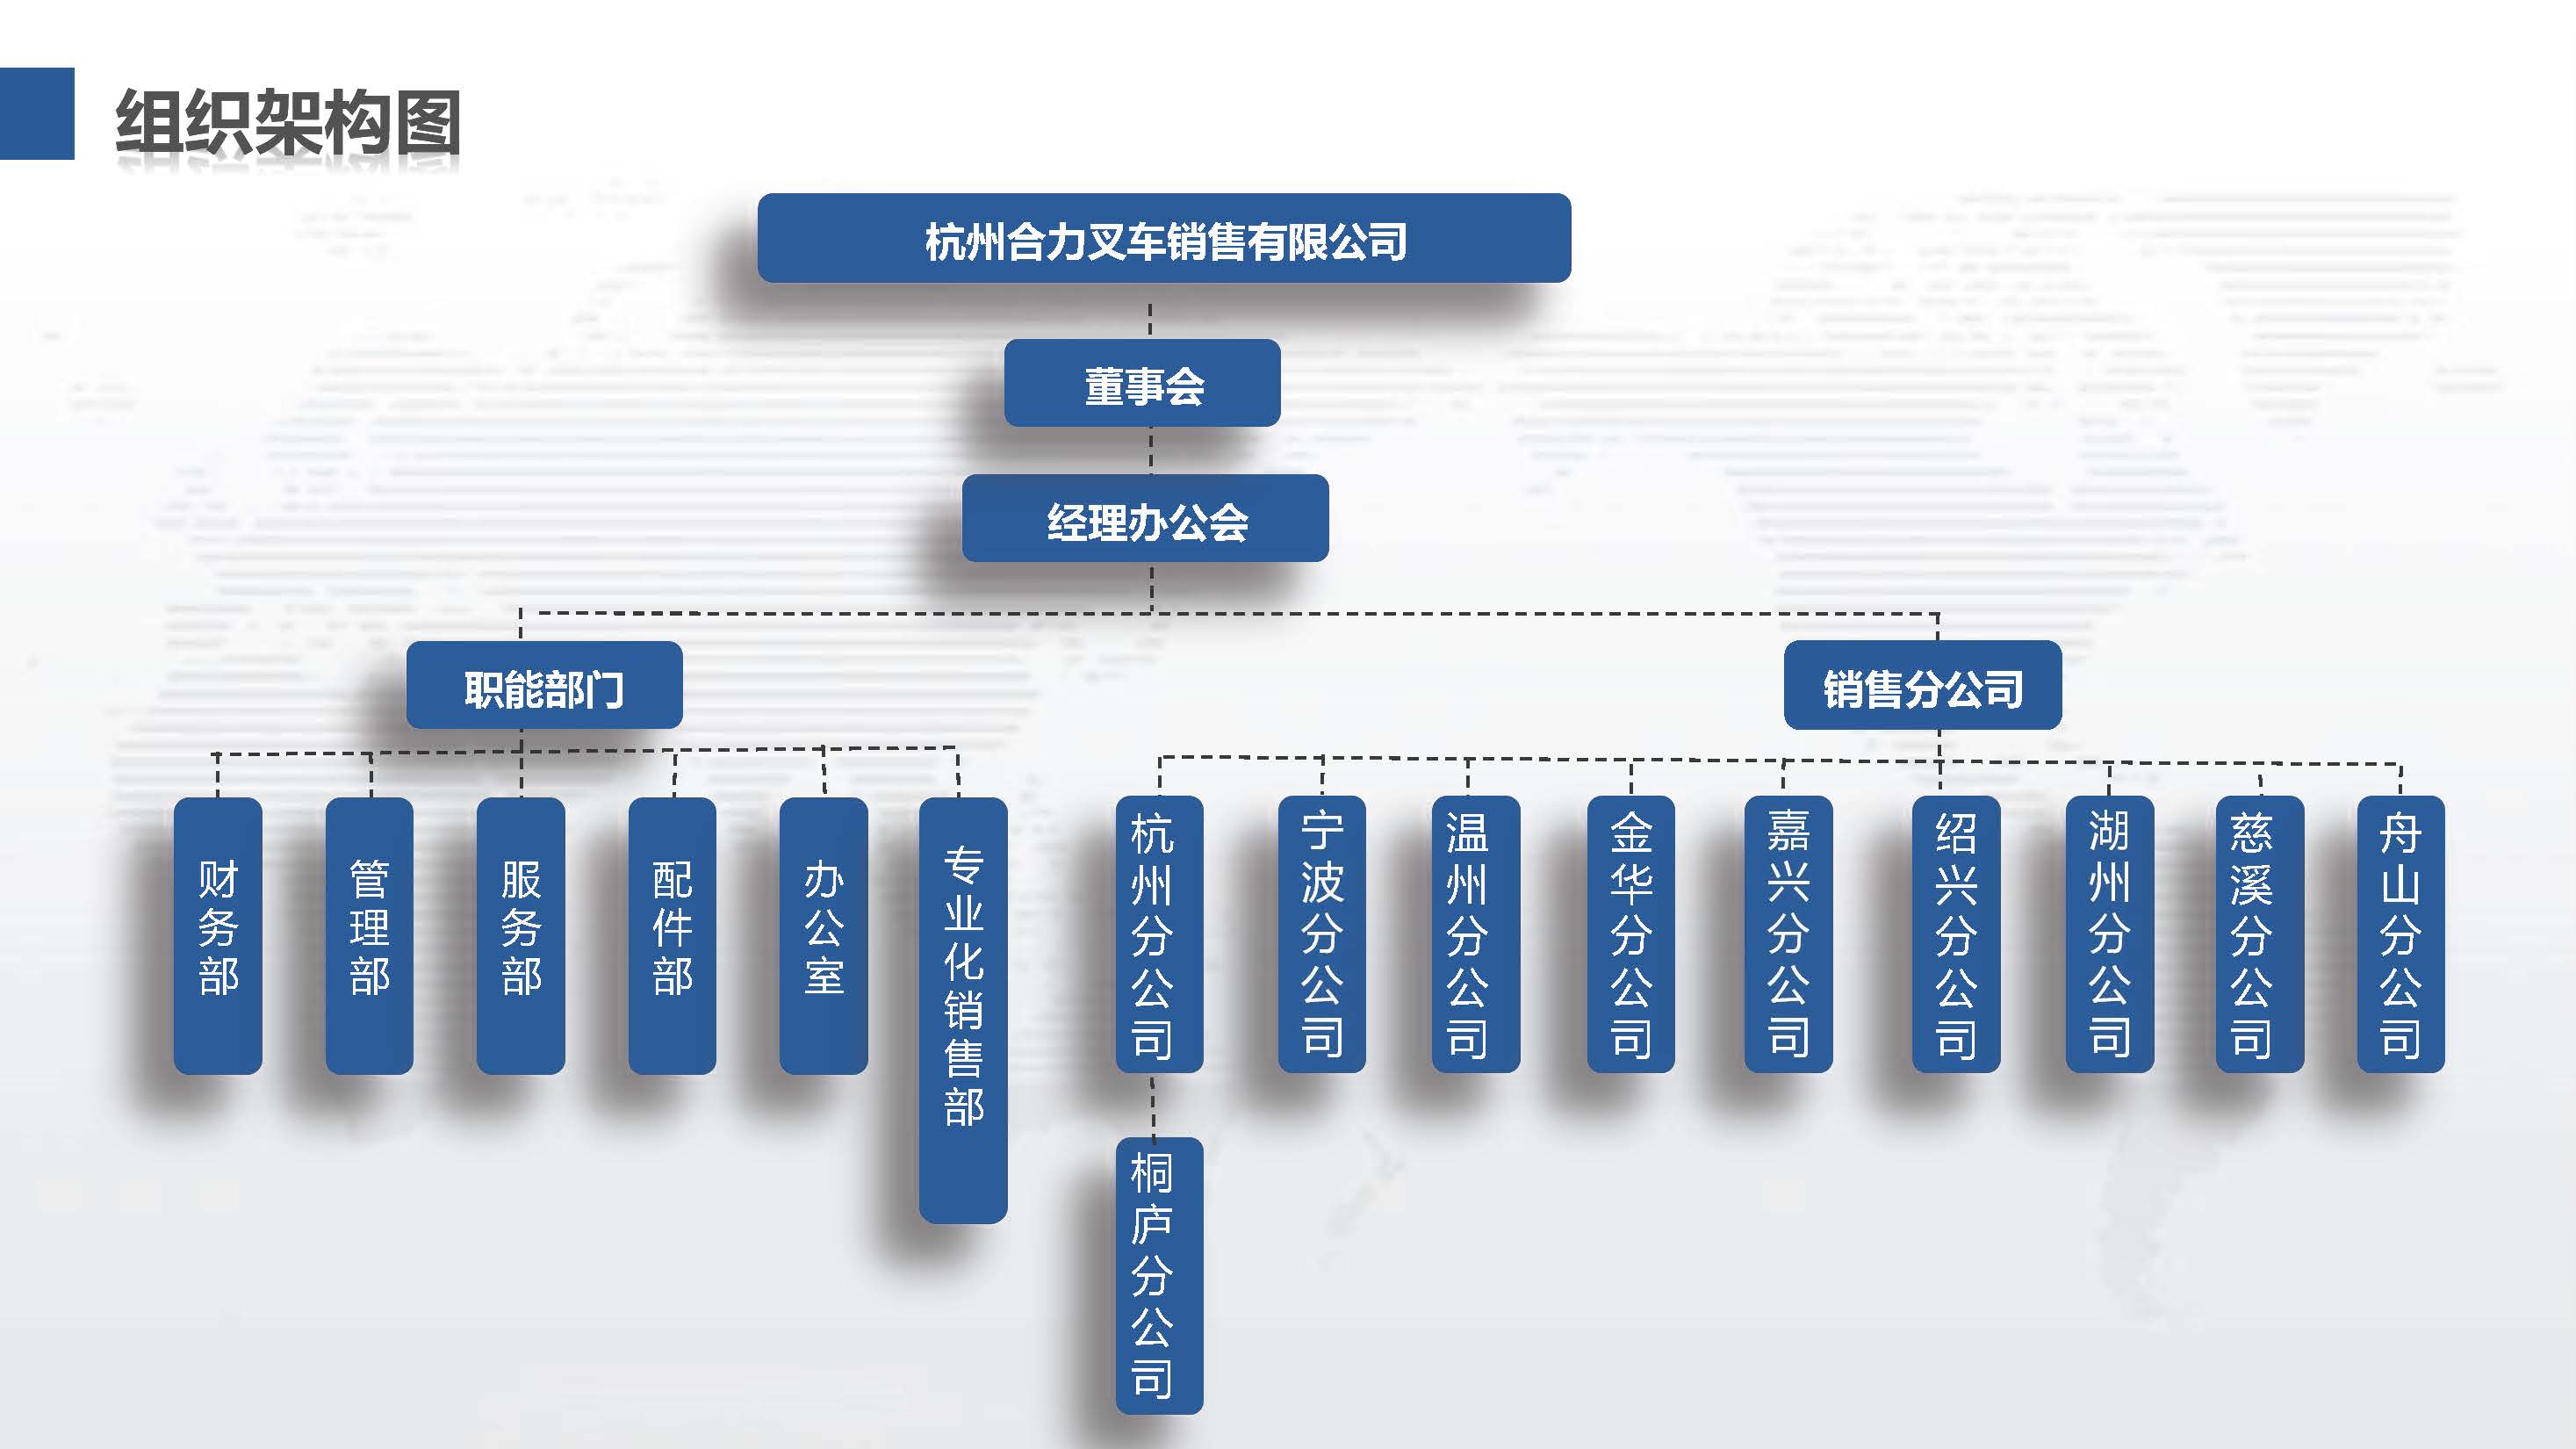 杭州欧洲杯押注入口组织机构图.jpg